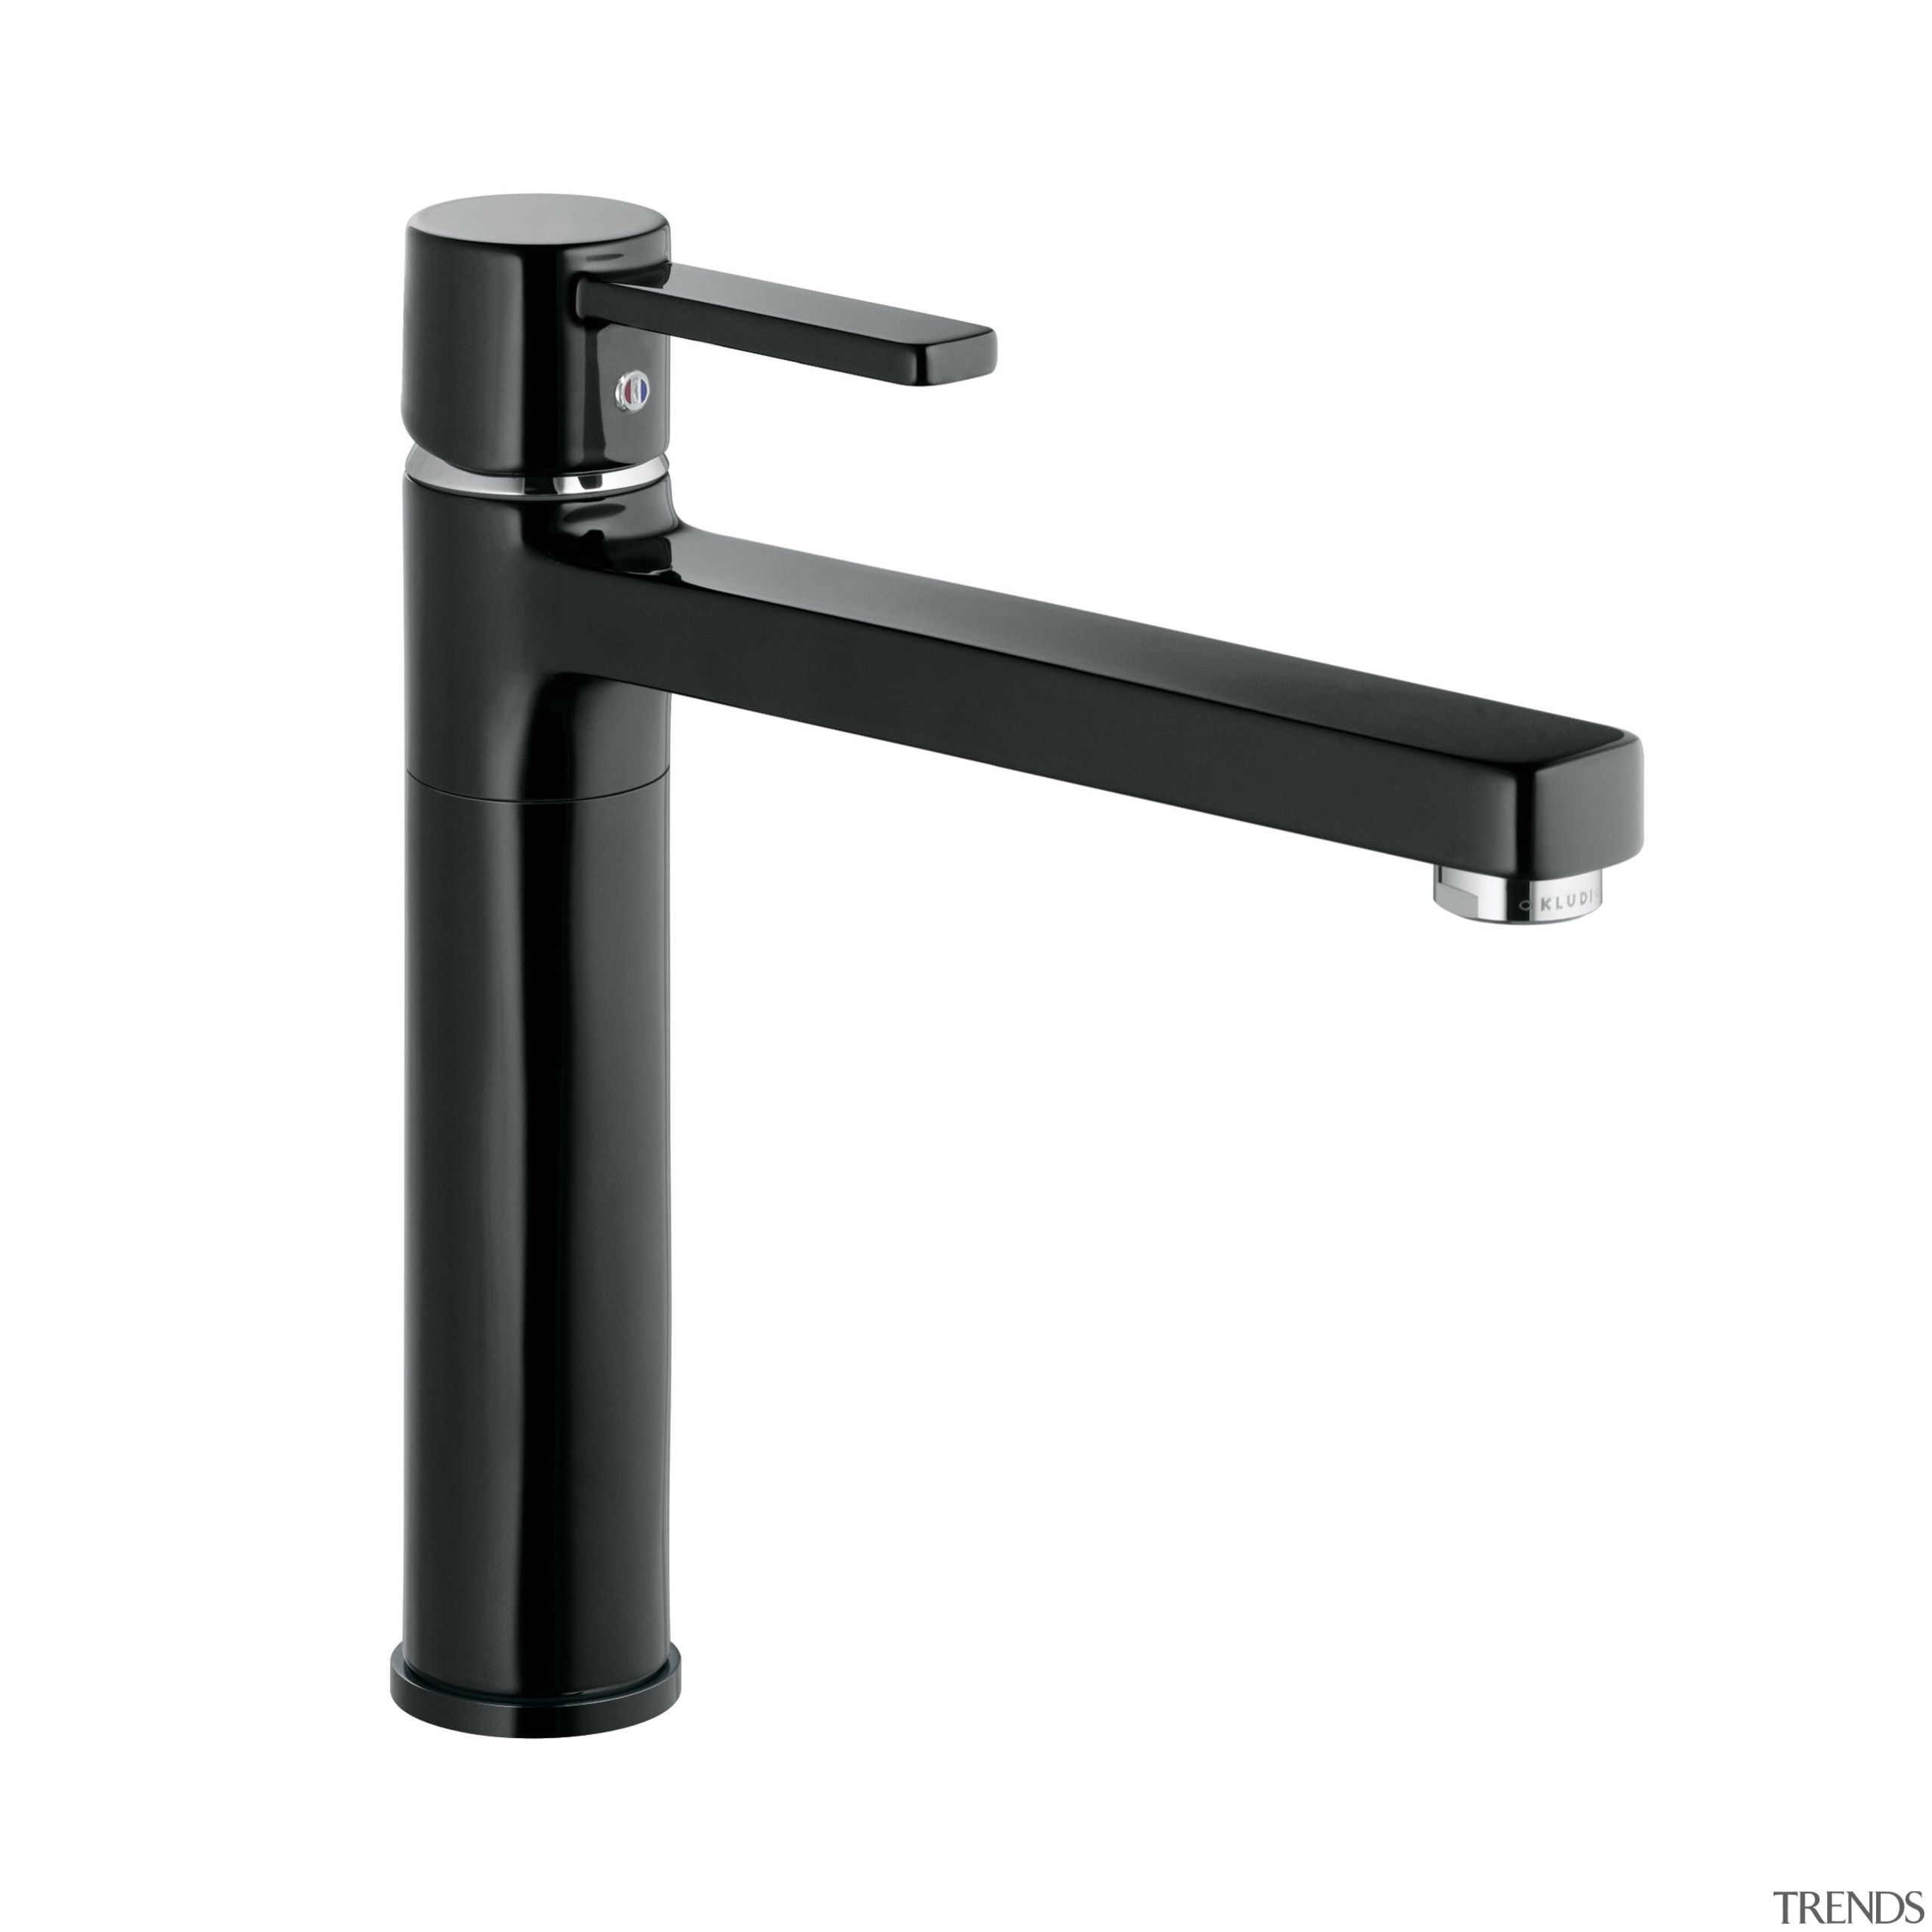 Zenta Black Sink Mixer - Zenta Black Sink hardware, plumbing fixture, product, product design, tap, white